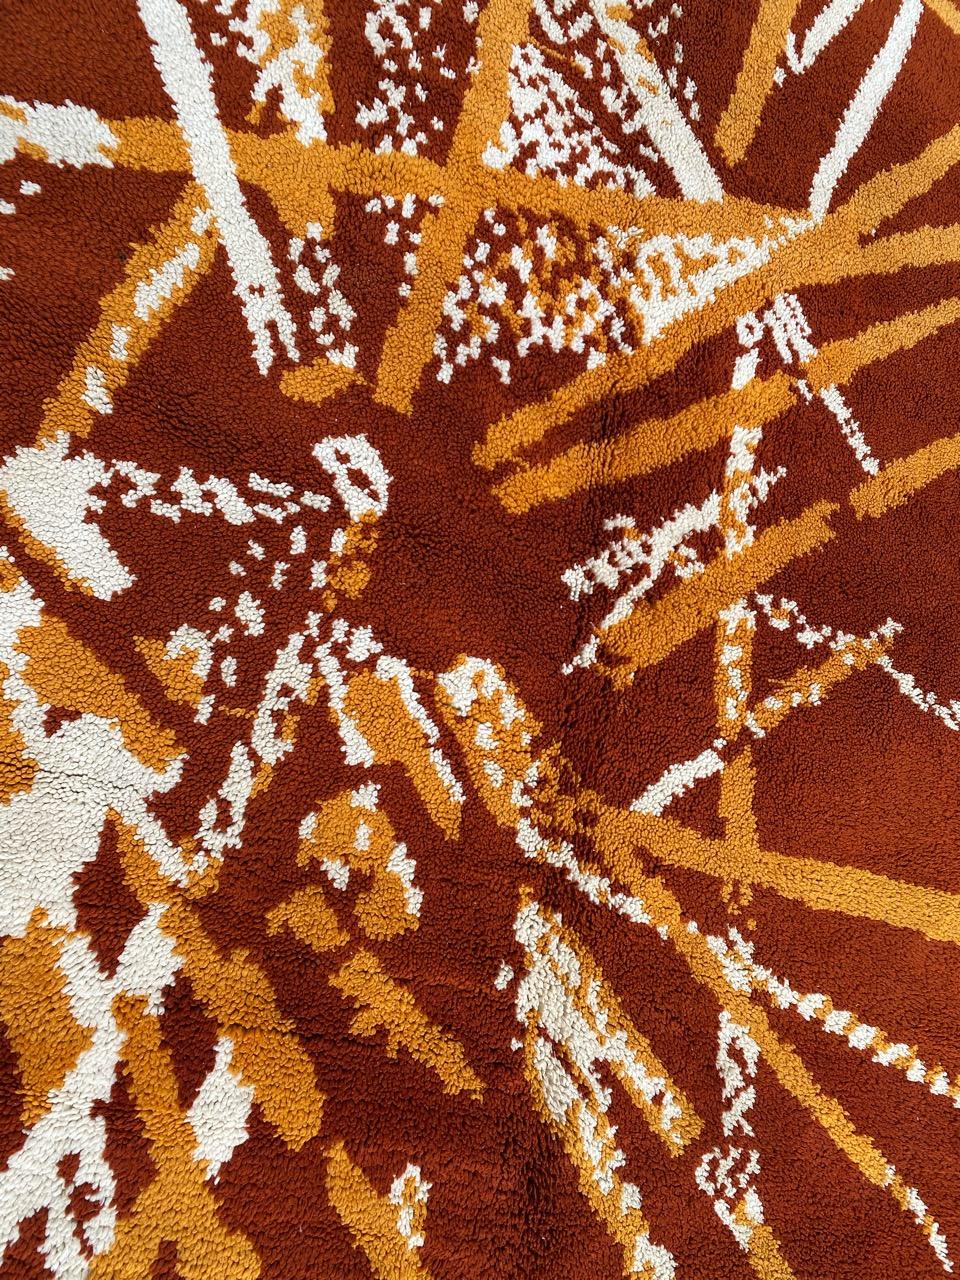 Très beau tapis de Cogolin du milieu du siècle dernier avec un beau design moderne et Art Déco et de belles couleurs avec un champ orange, entièrement noué à la main avec du velours de laine sur une base de coton.

✨✨✨
